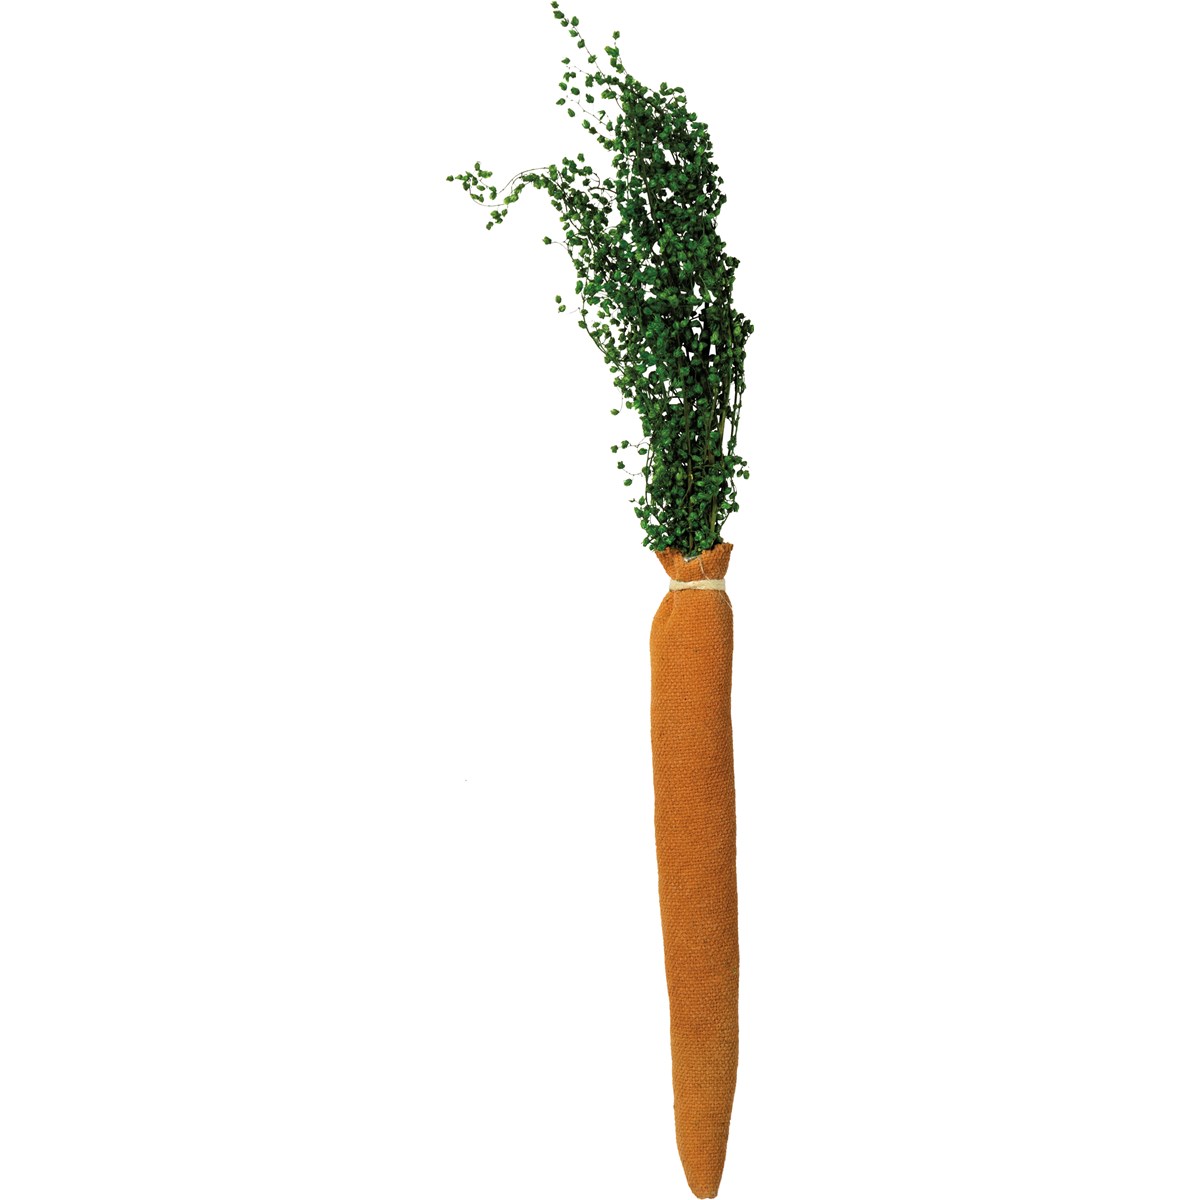 Primitive Carrots - 0.75" x 8" - Cotton, Natural Foliage, String